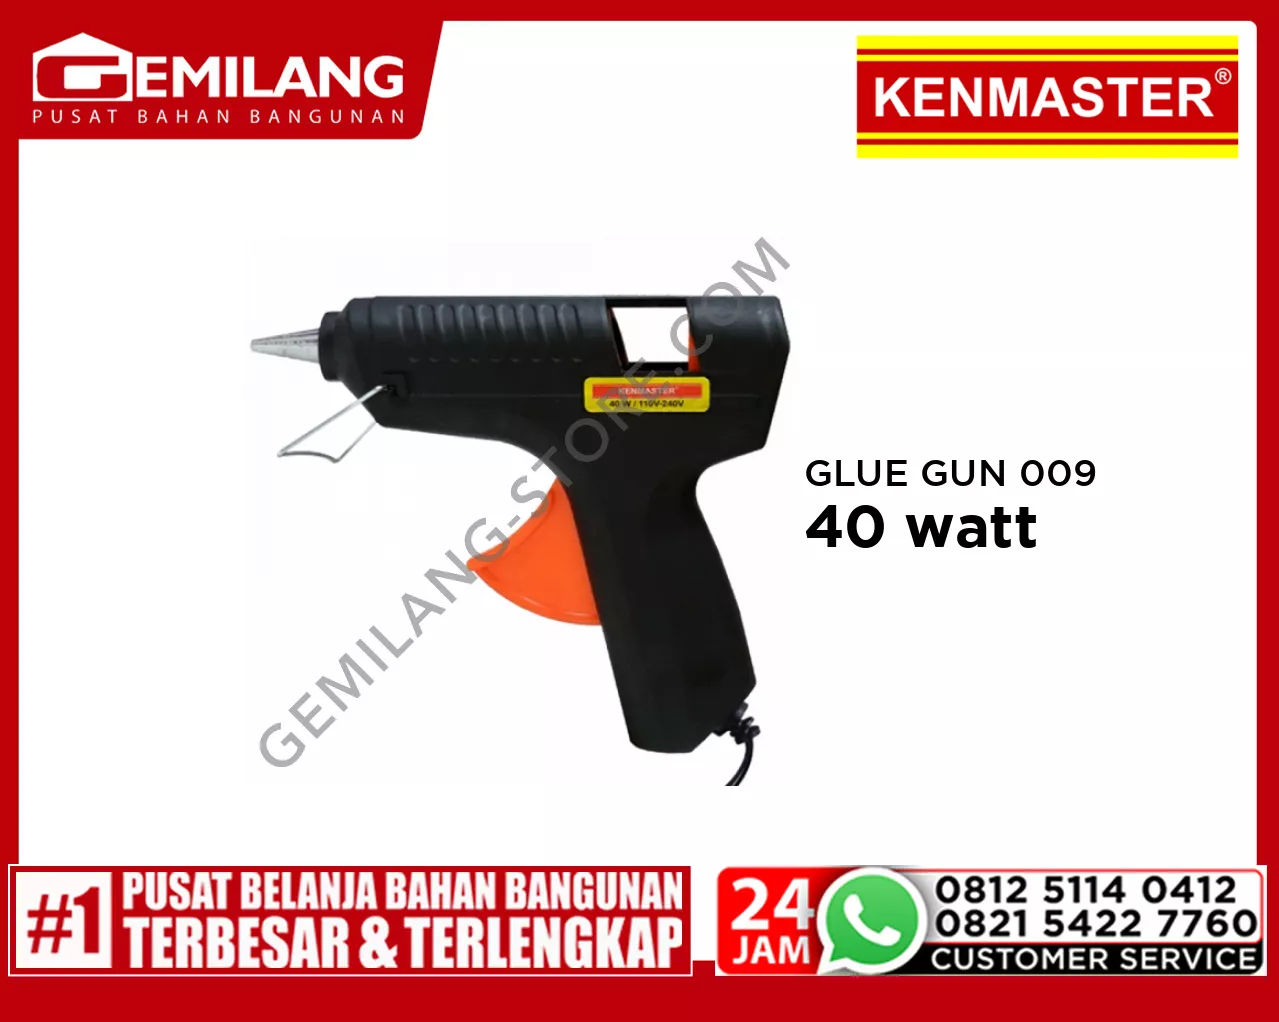 KENMASTER GLUE GUN 009 40w